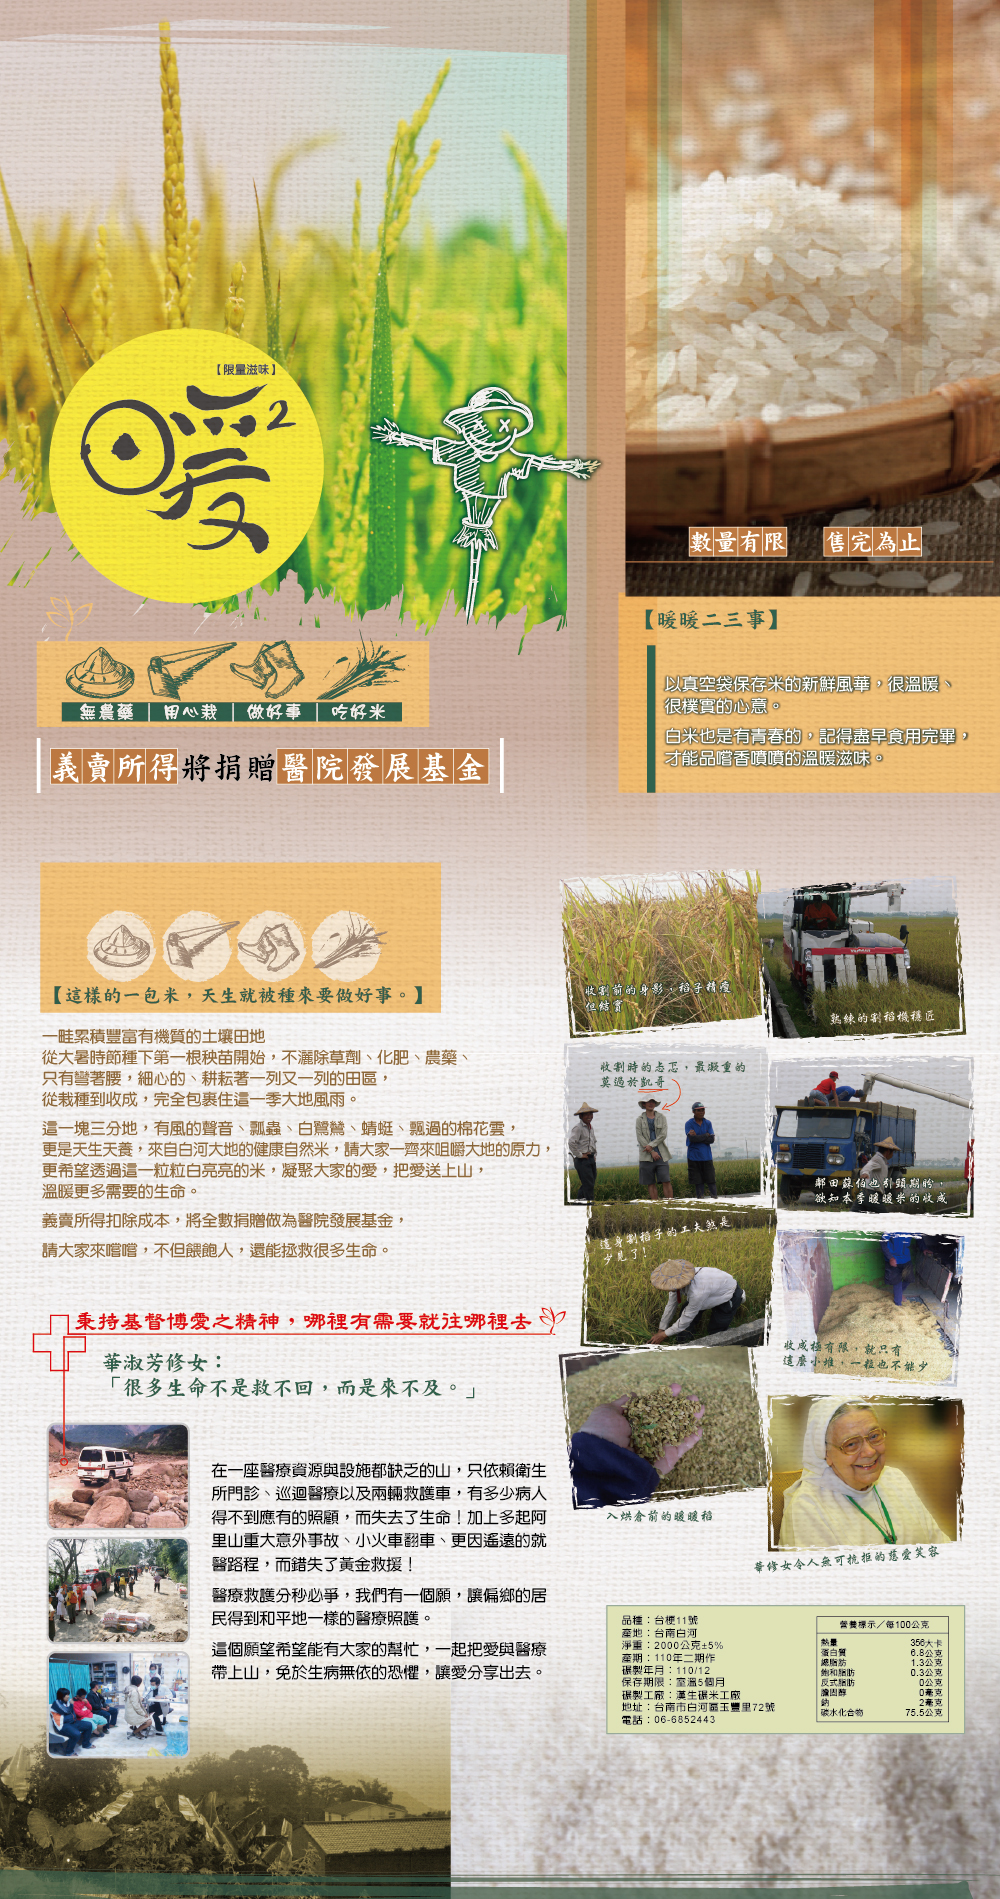 暖暖米義賣~來自台南市白河區小農夫妻友善對待耕地、愛心捐獻的「暖暖自然米」